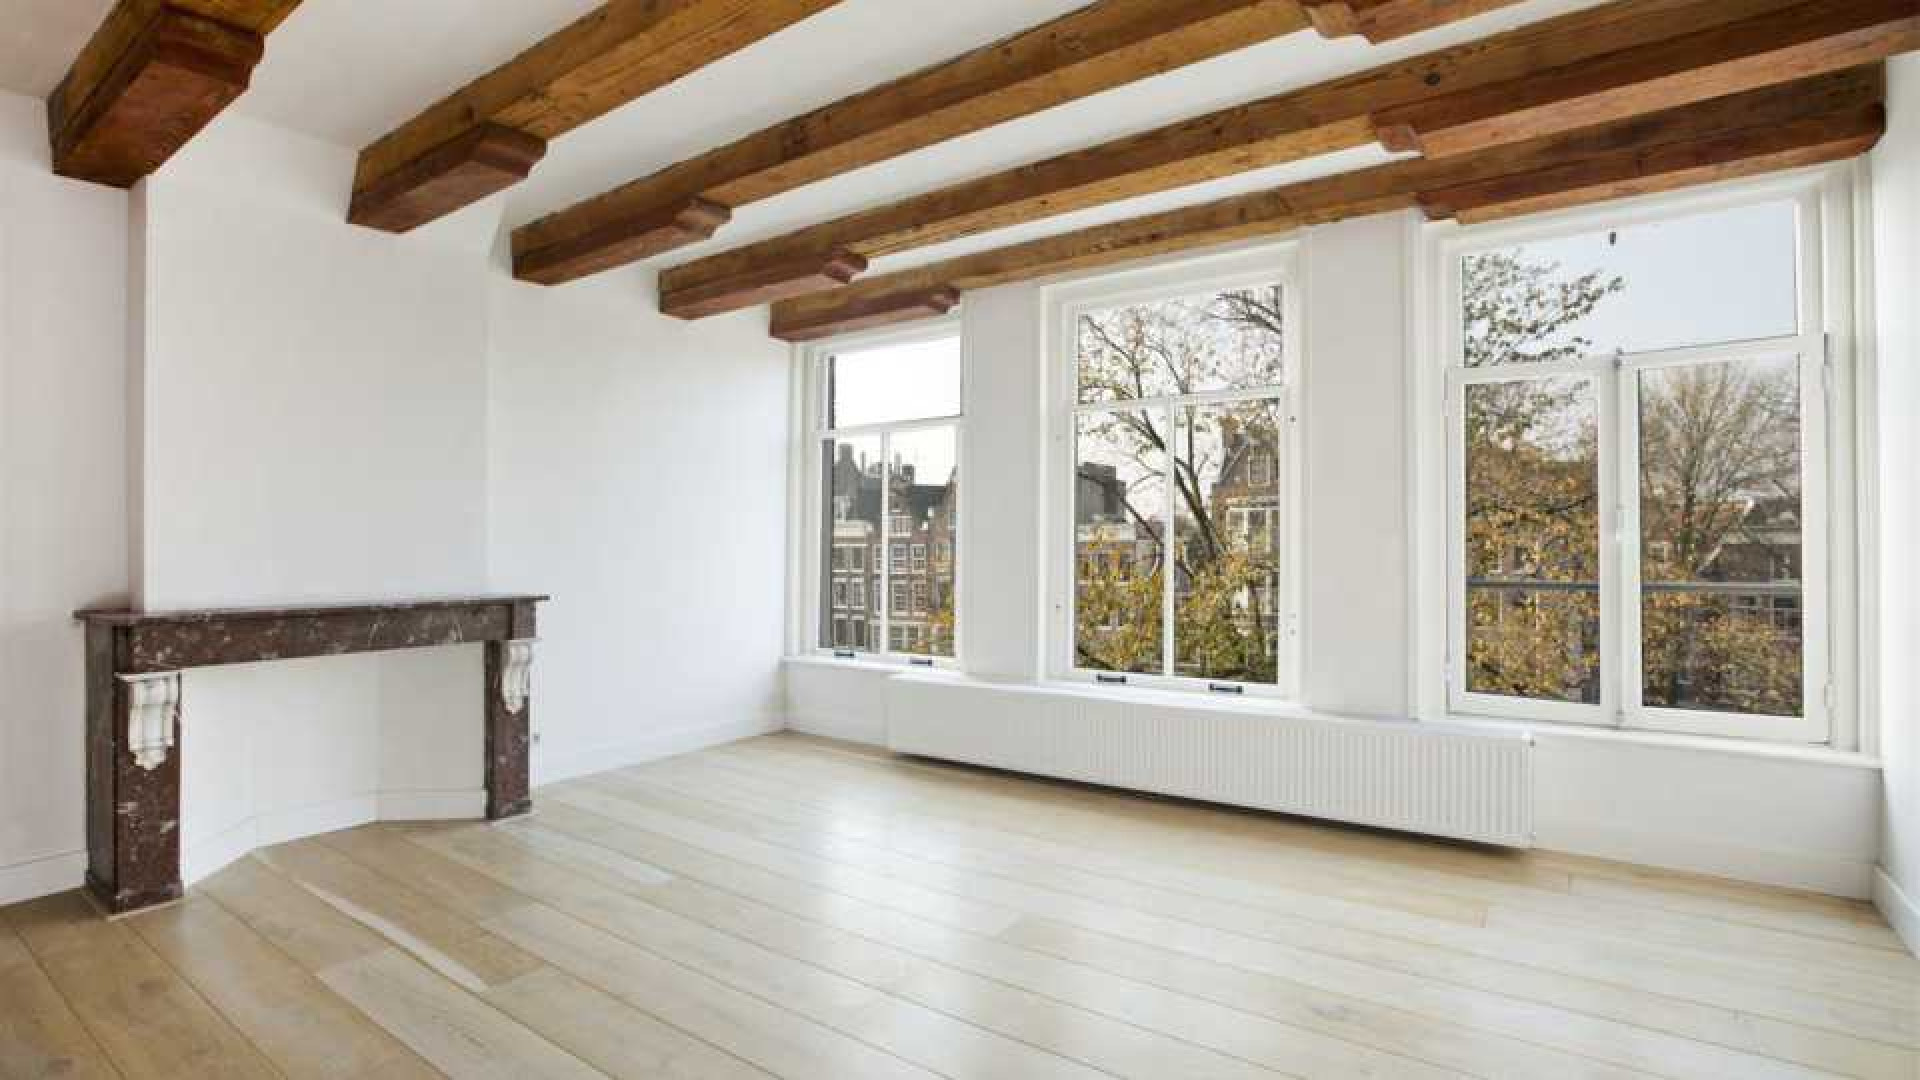 DJ Tiesto verlaagt huur van zijn luxe dubbele bovenhuis in Amsterdam. 2